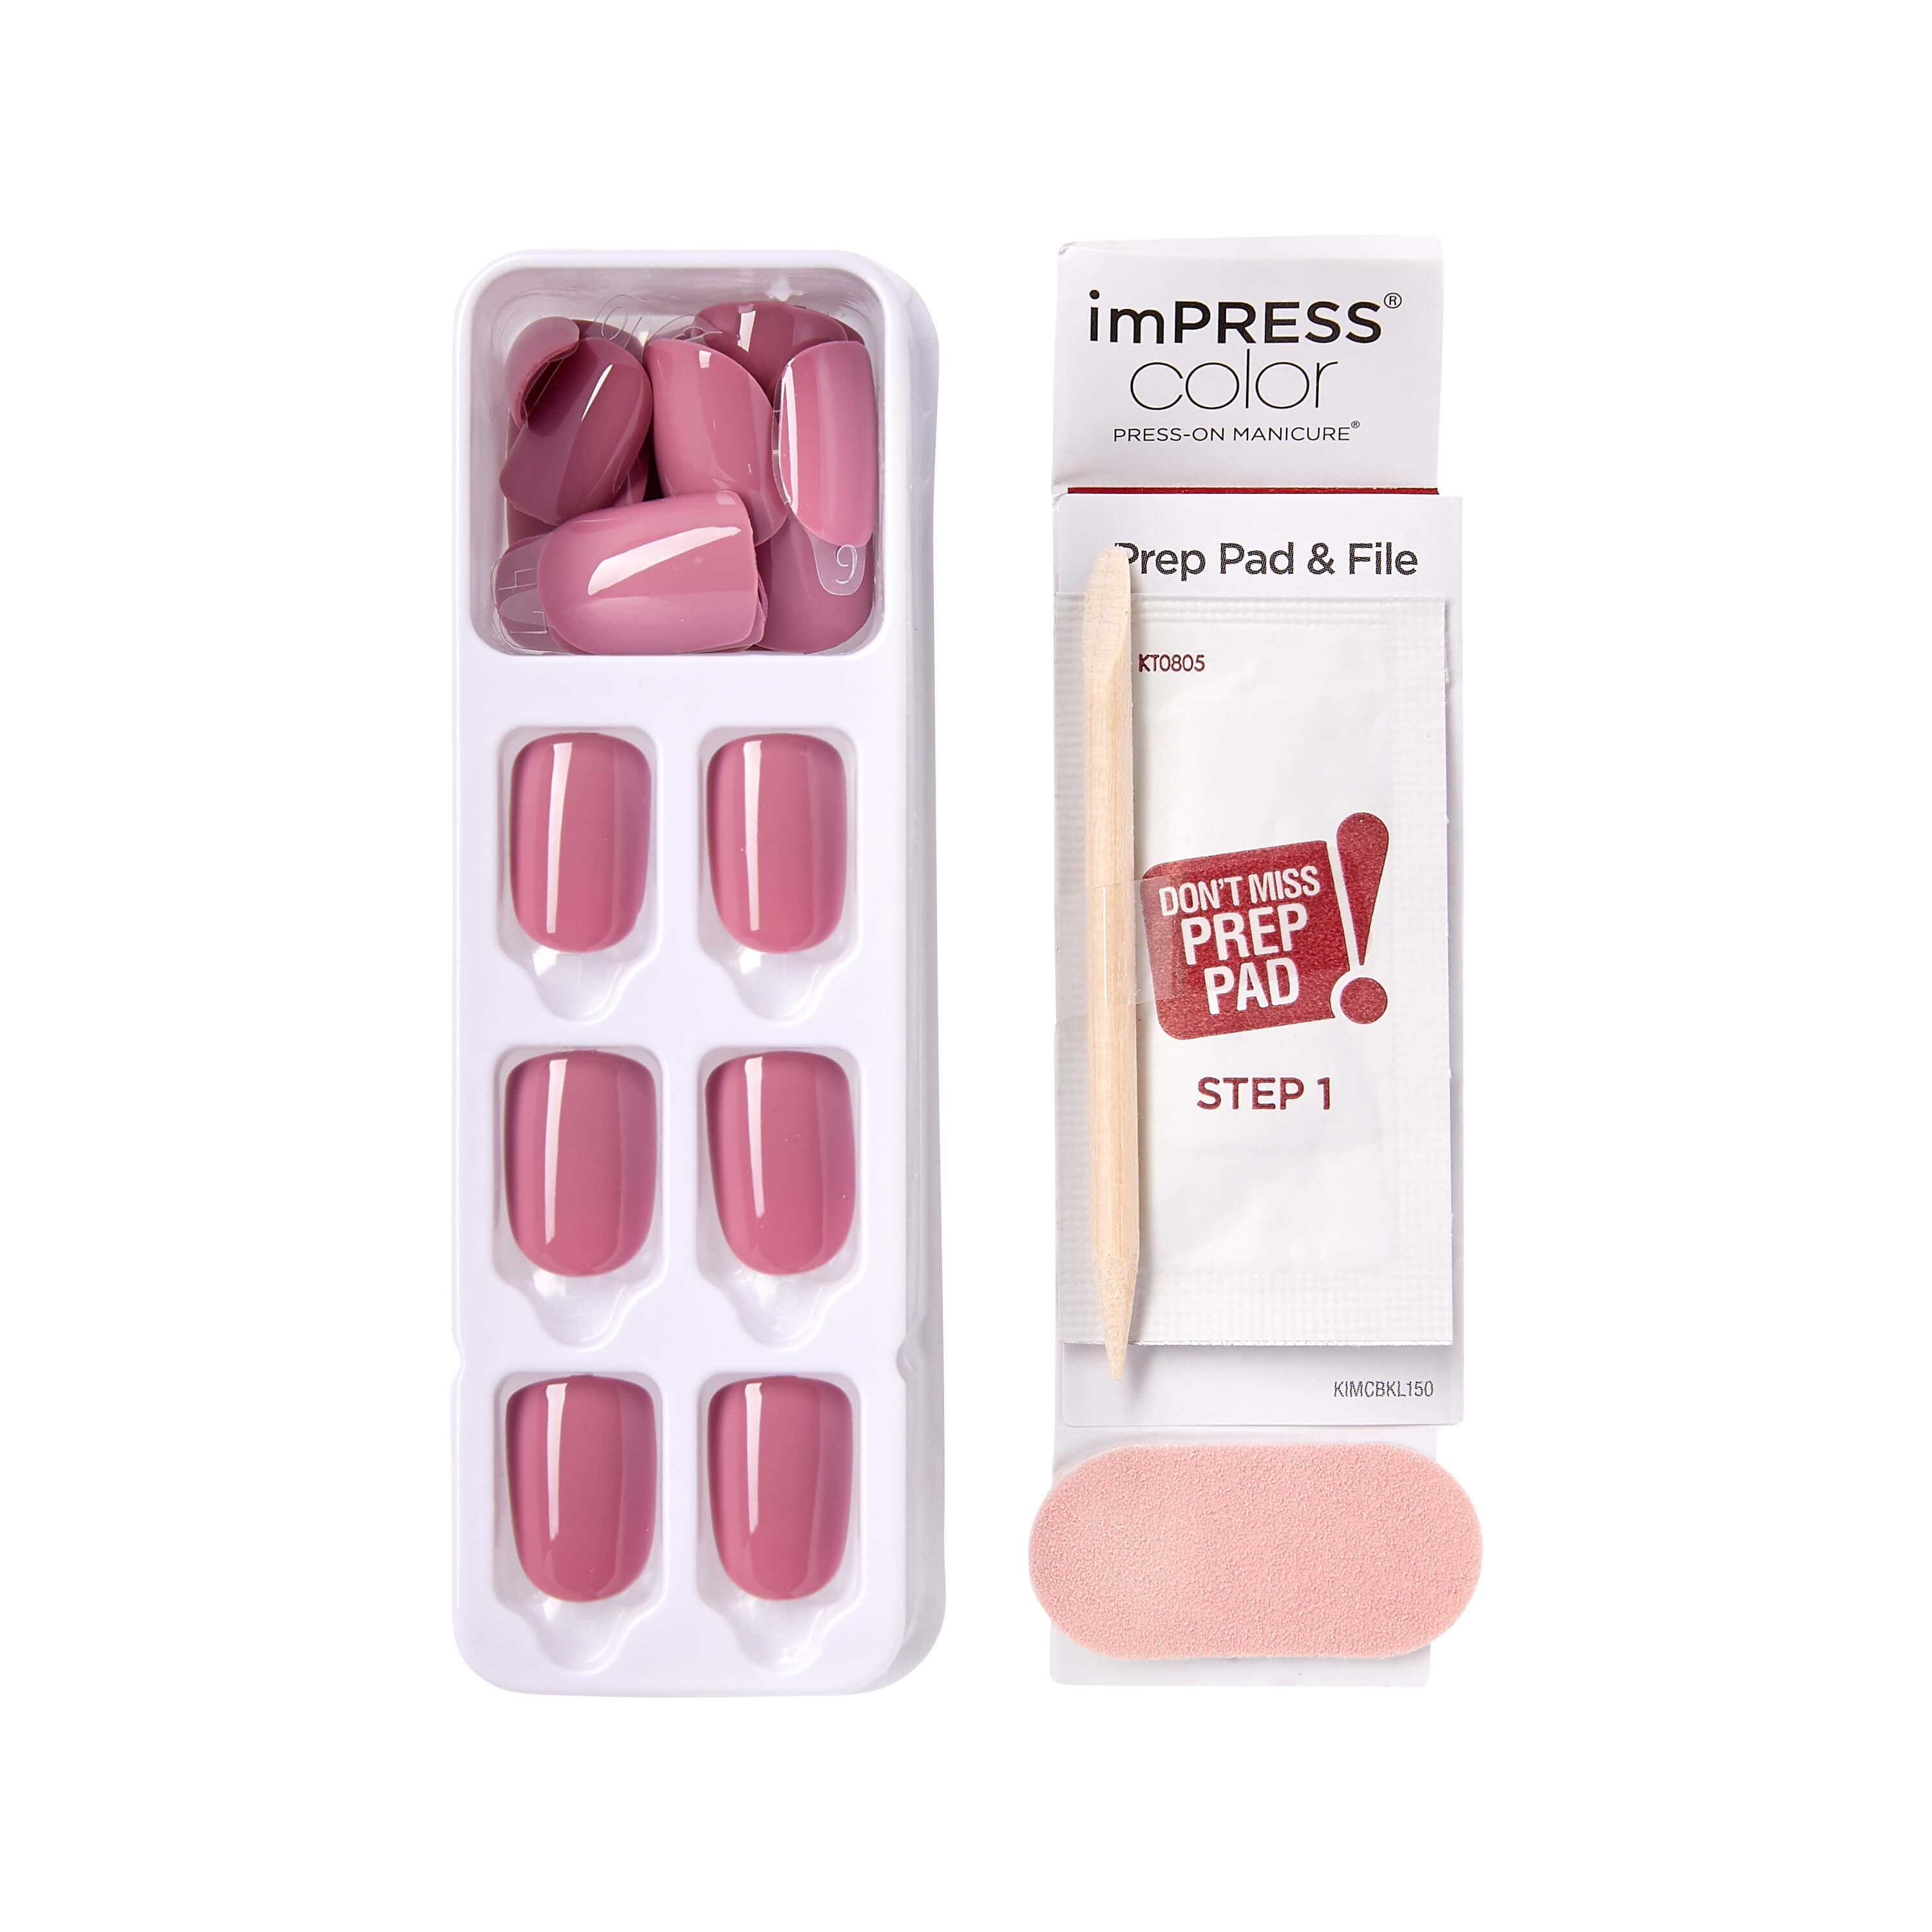 KISS imPRESS Color Press-on Manicure, Petal Pink, Short - image 3 of 9